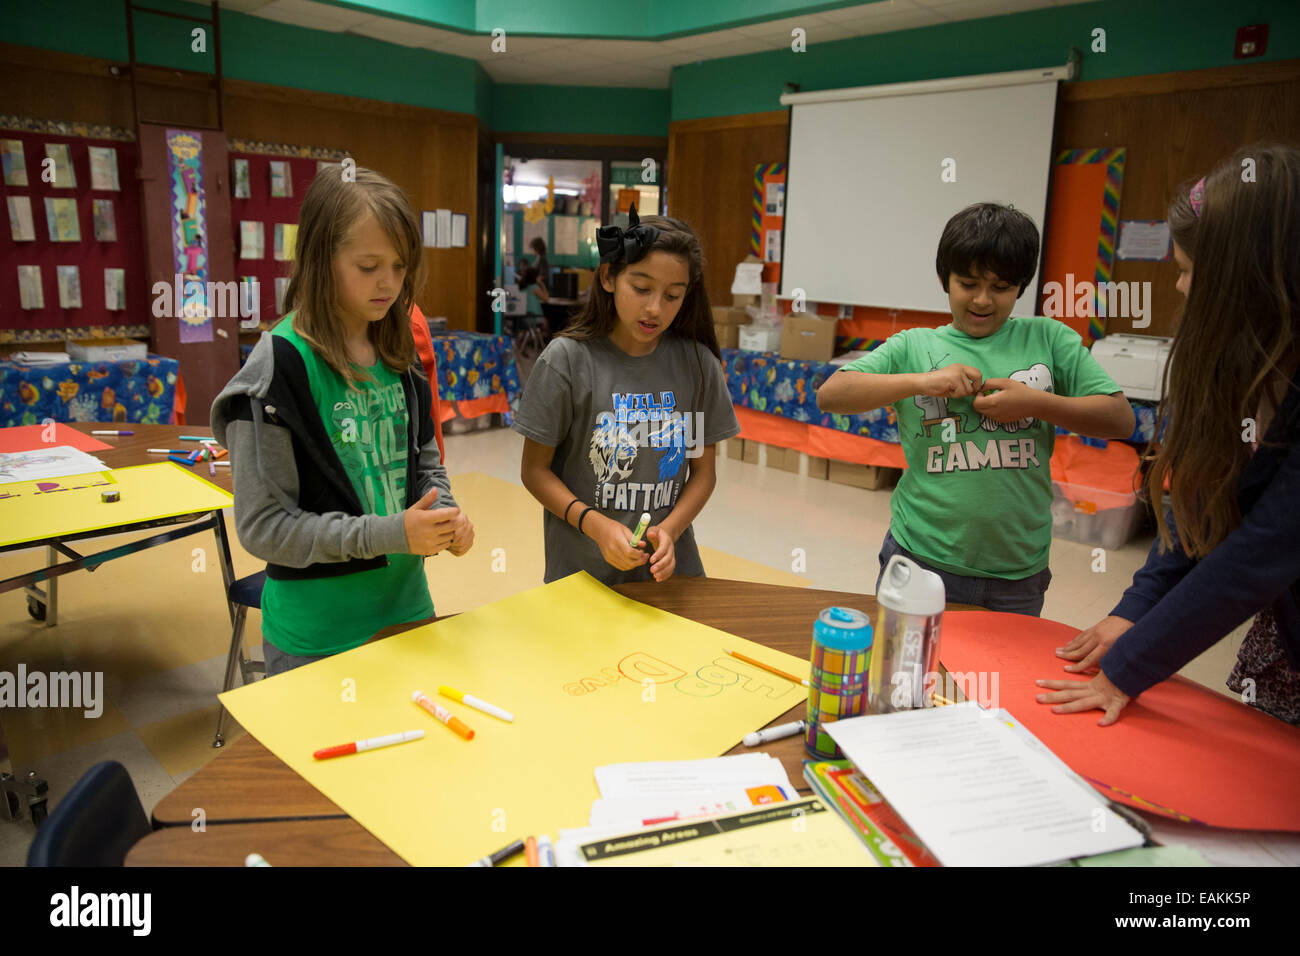 Fünfte Klasse Schüler und Mitglieder des Vereins Führung an der Texas Elementary School, bereiten Sie Plakate und Schilder für Lebensmittel-Laufwerk Stockfoto